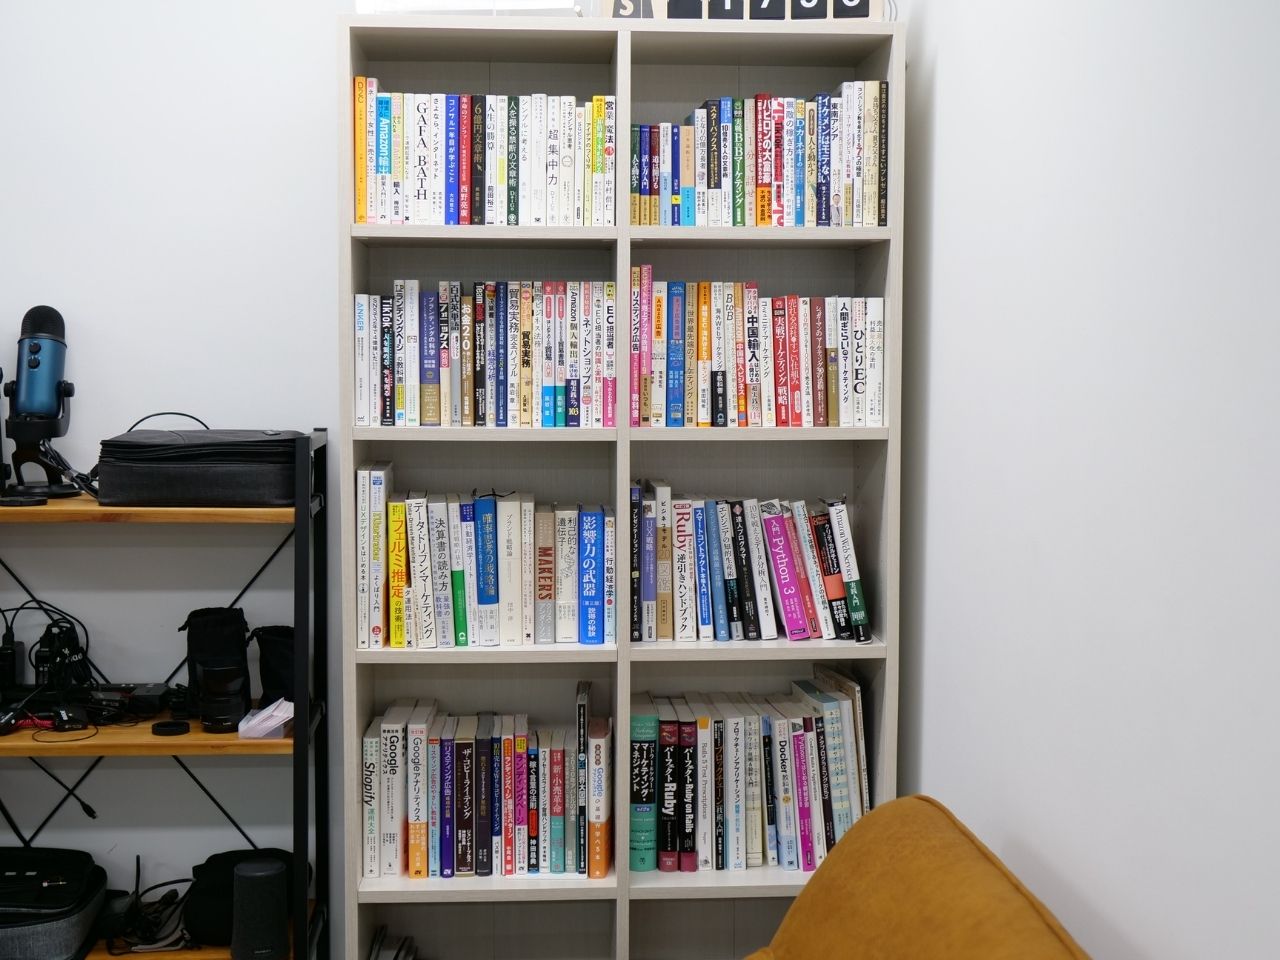 渋谷オフィスの本棚。スキルアップにつながる書籍は買い足してもいいし、持って帰って読んでもよい。